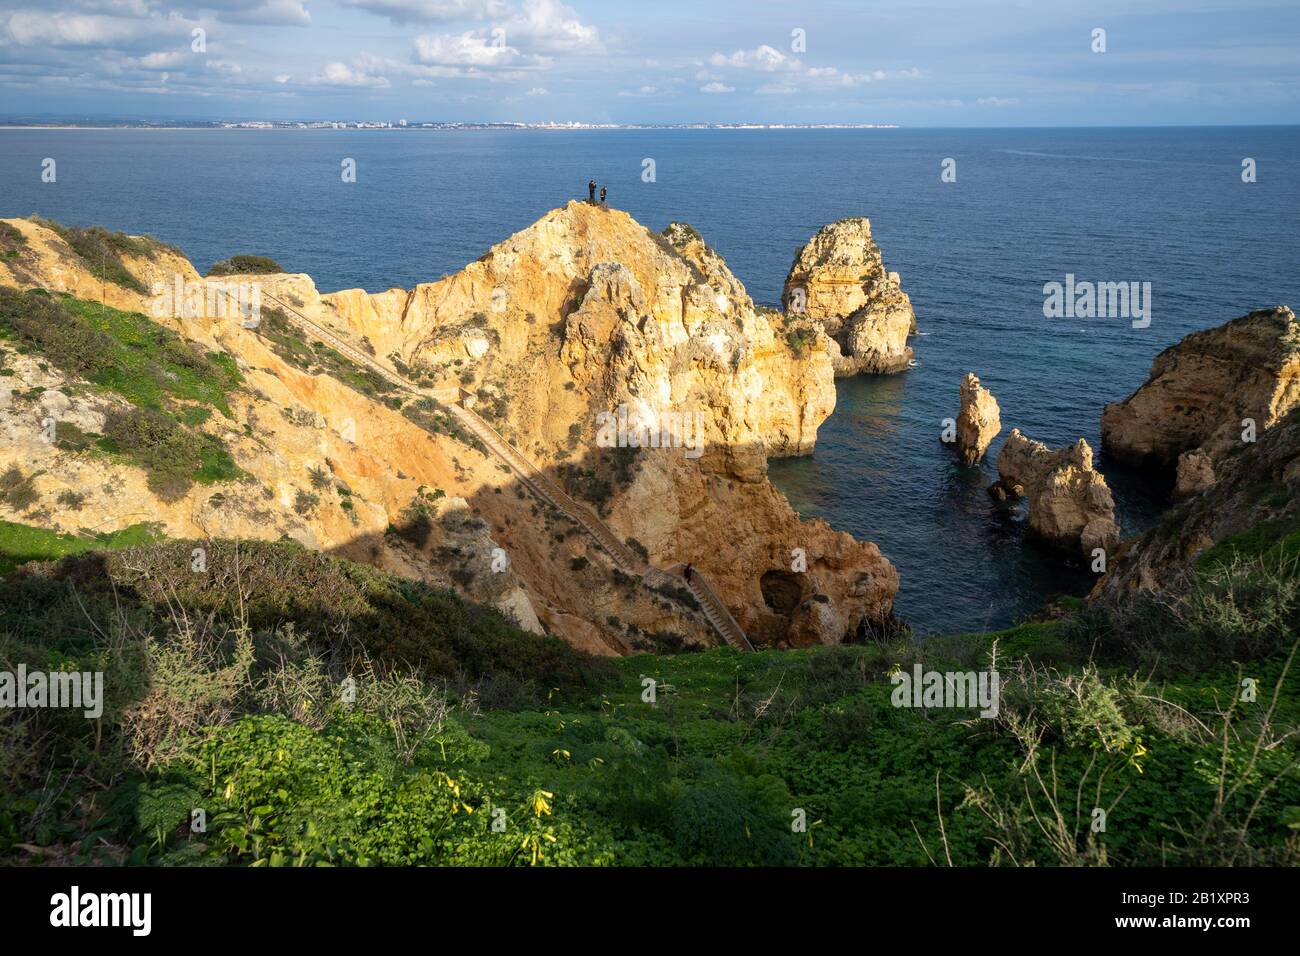 Lagos, Portugal - 22. Januar 2020: Thrillseeker Touristen machen Fotos mit einem Telefon auf einer sehr steilen Felswand an der Algarve, mit malerischen Aussichten Stockfoto